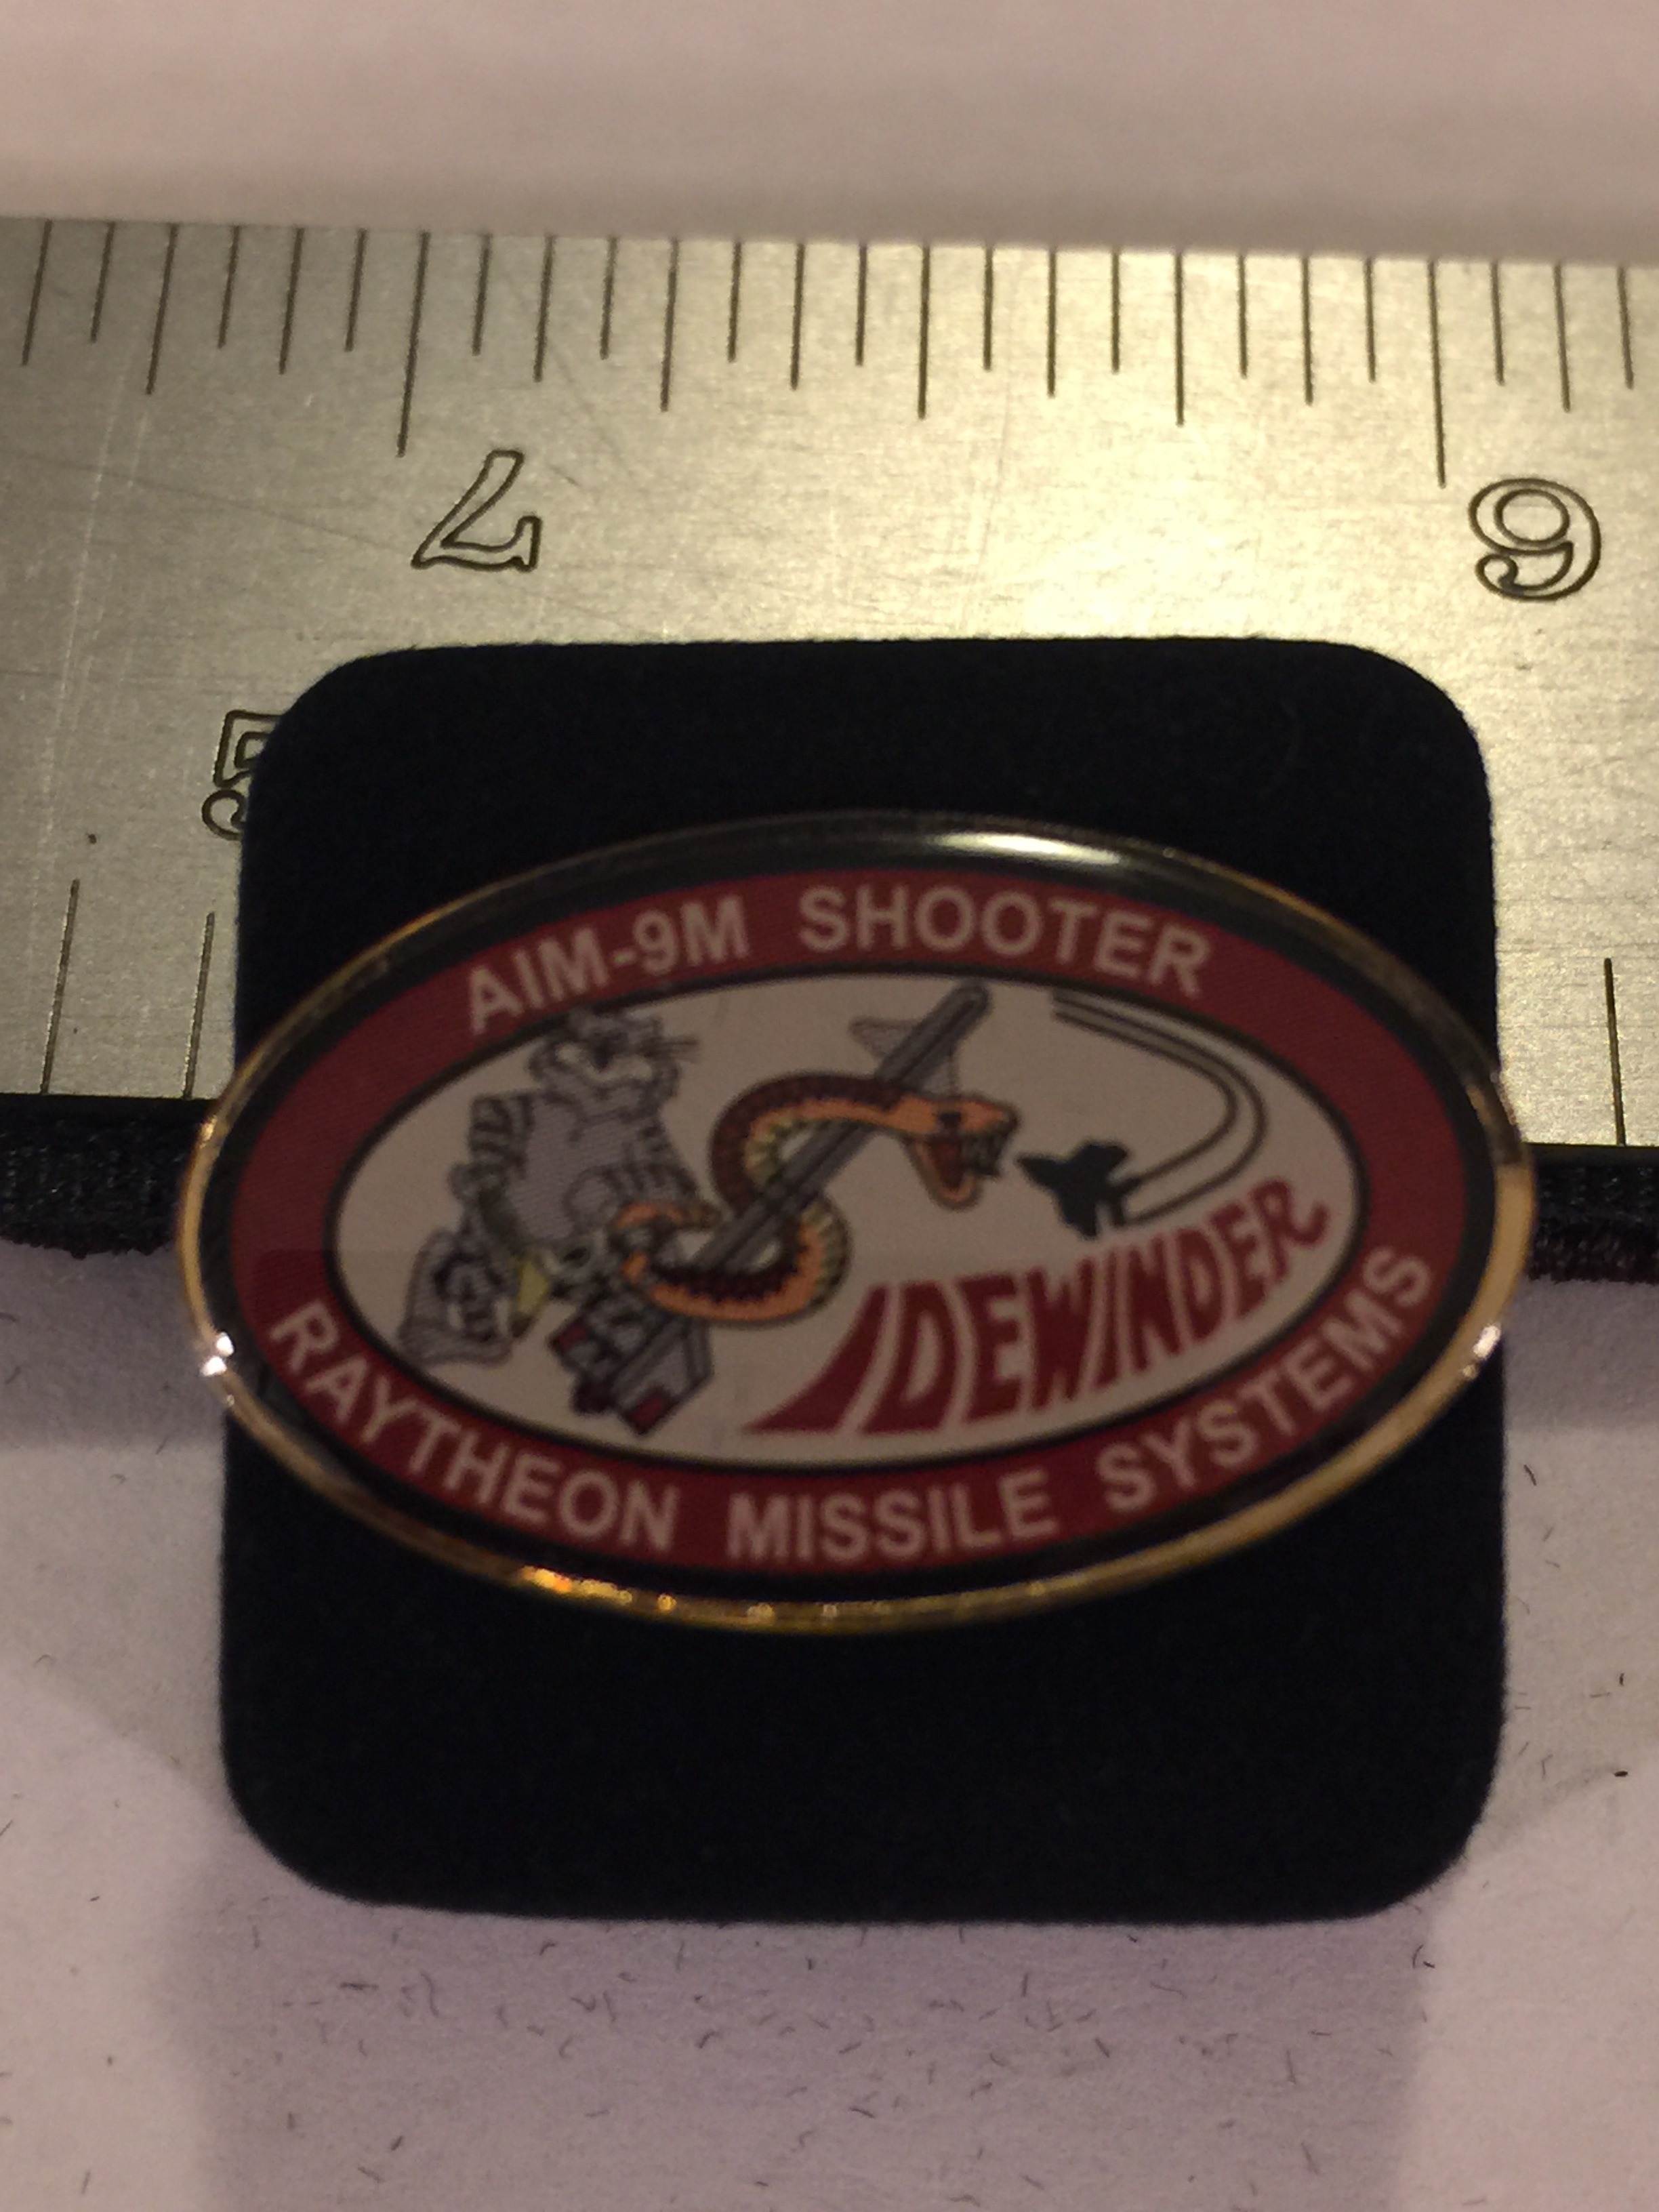 Lapel Pin: AIM-9RMS